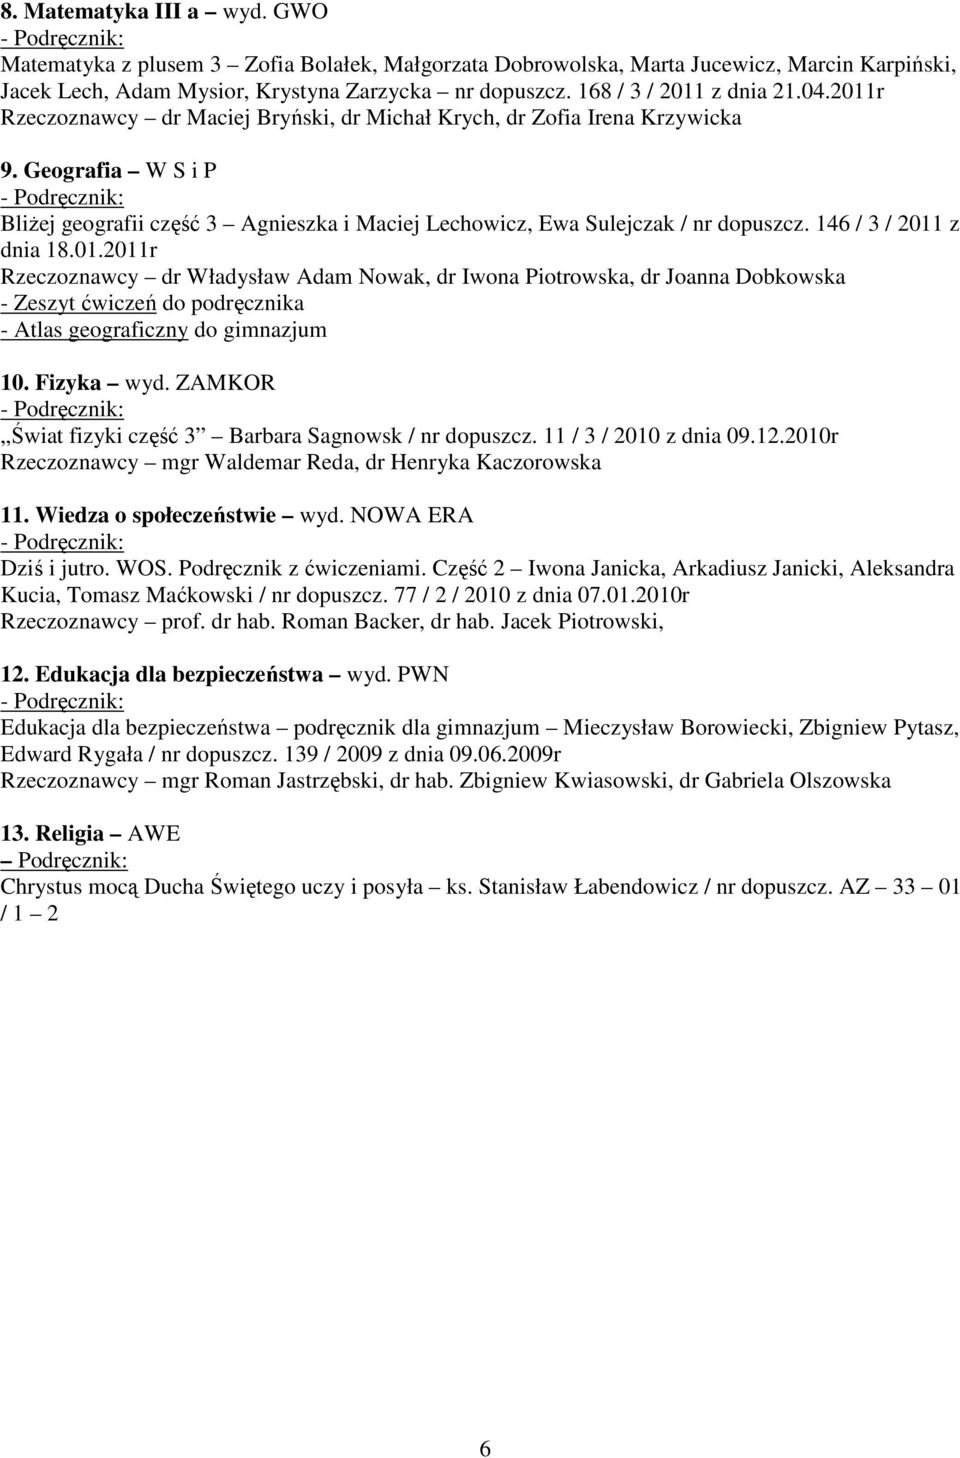 Geografia W S i P Bliżej geografii część 3 Agnieszka i Maciej Lechowicz, Ewa Sulejczak / nr dopuszcz. 146 / 3 / 2011